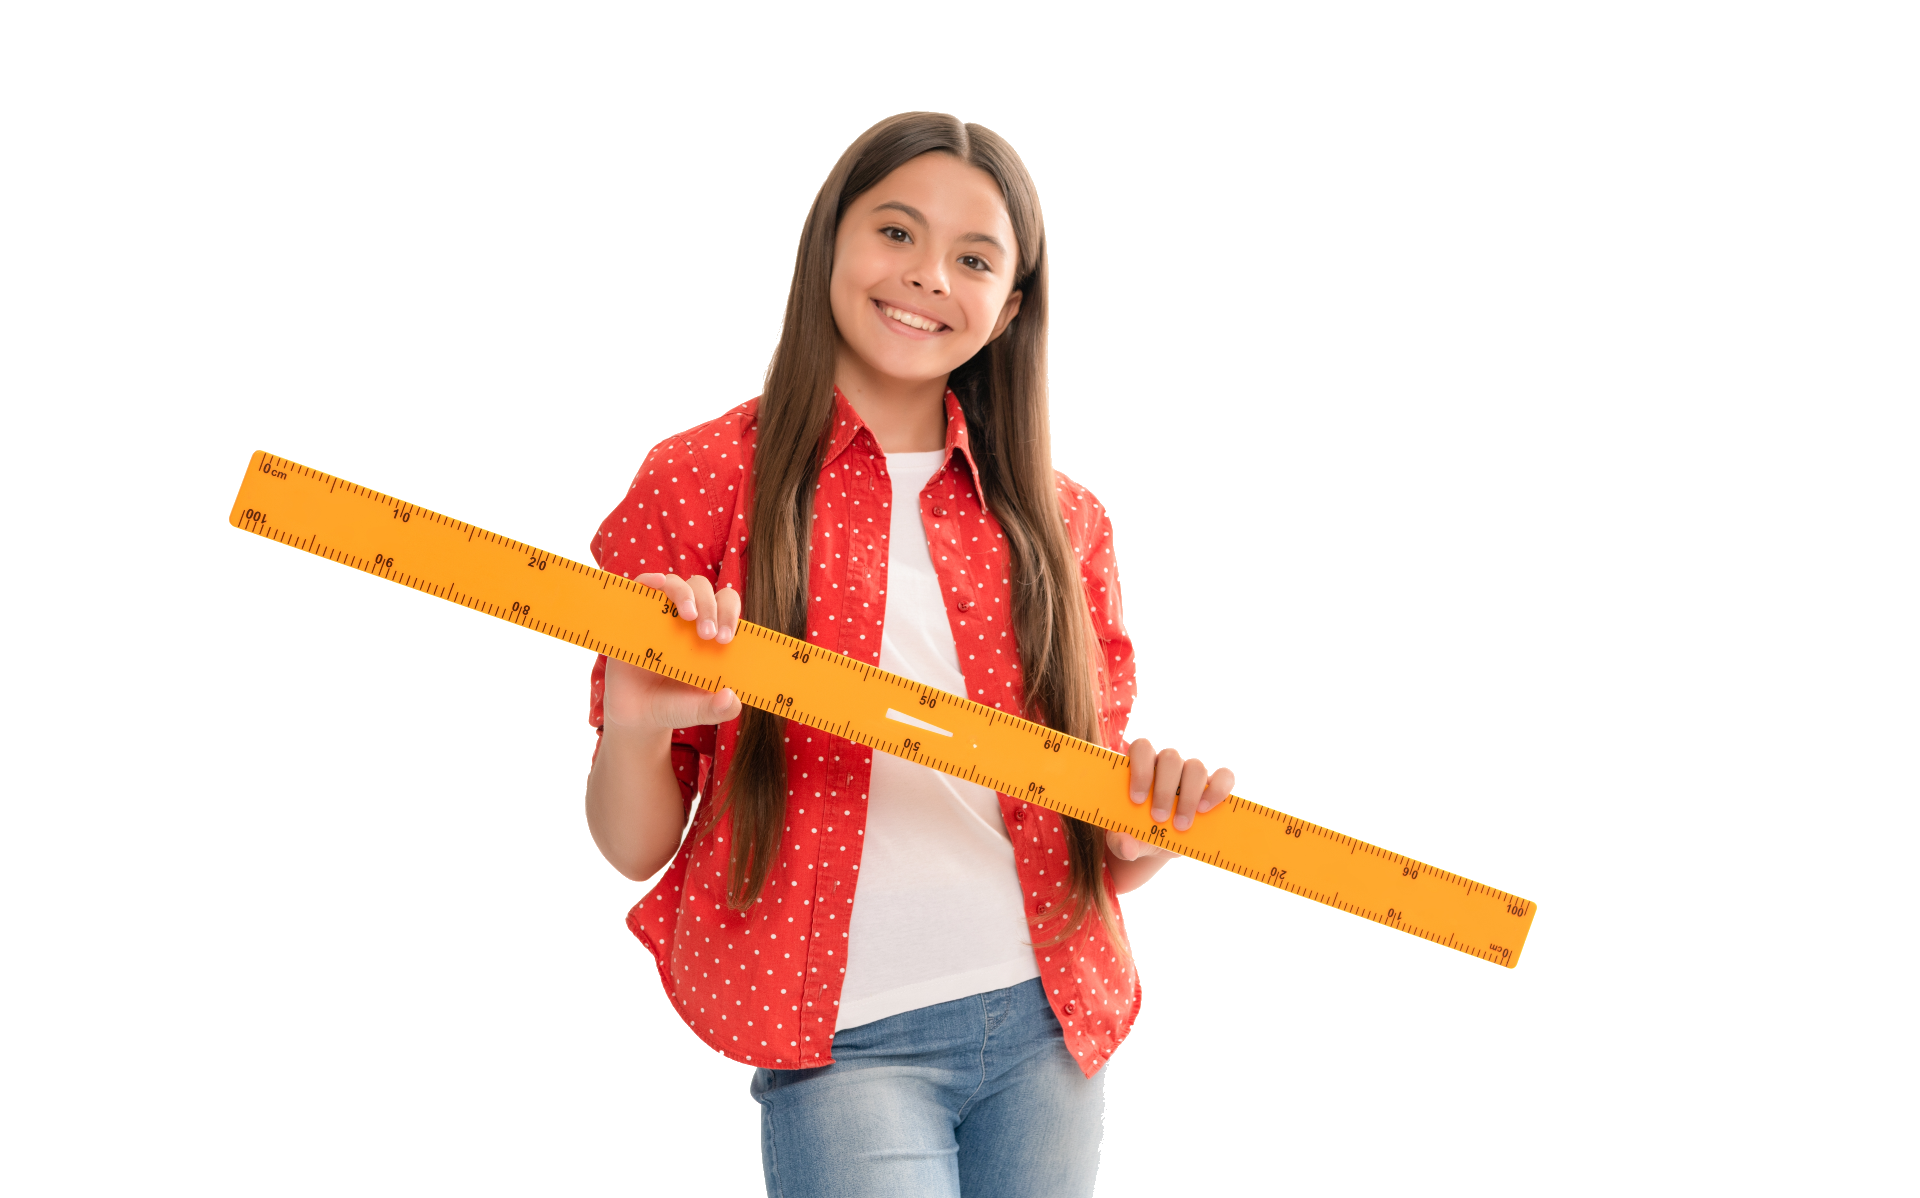 Foto de una niña sonriendo y sosteniendo una regla